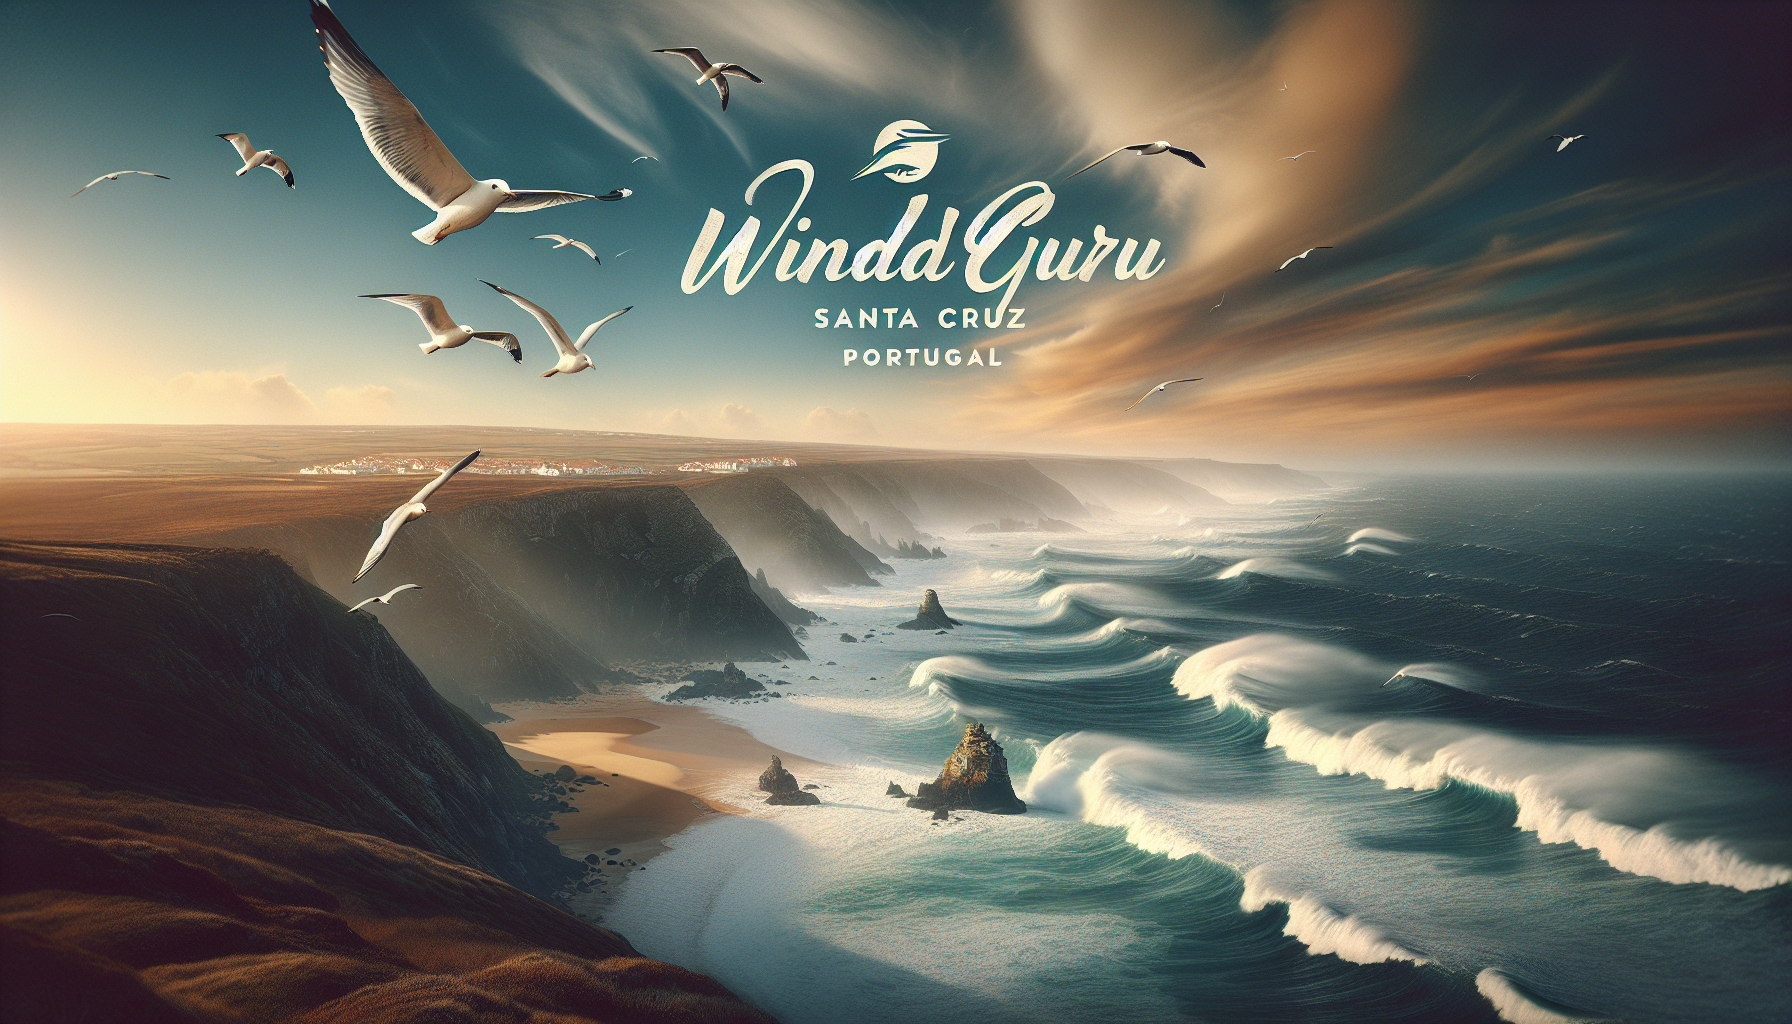 Windguru Santa Cruz, Portugal: A Previsão Essencial para Surfistas e Velejadores